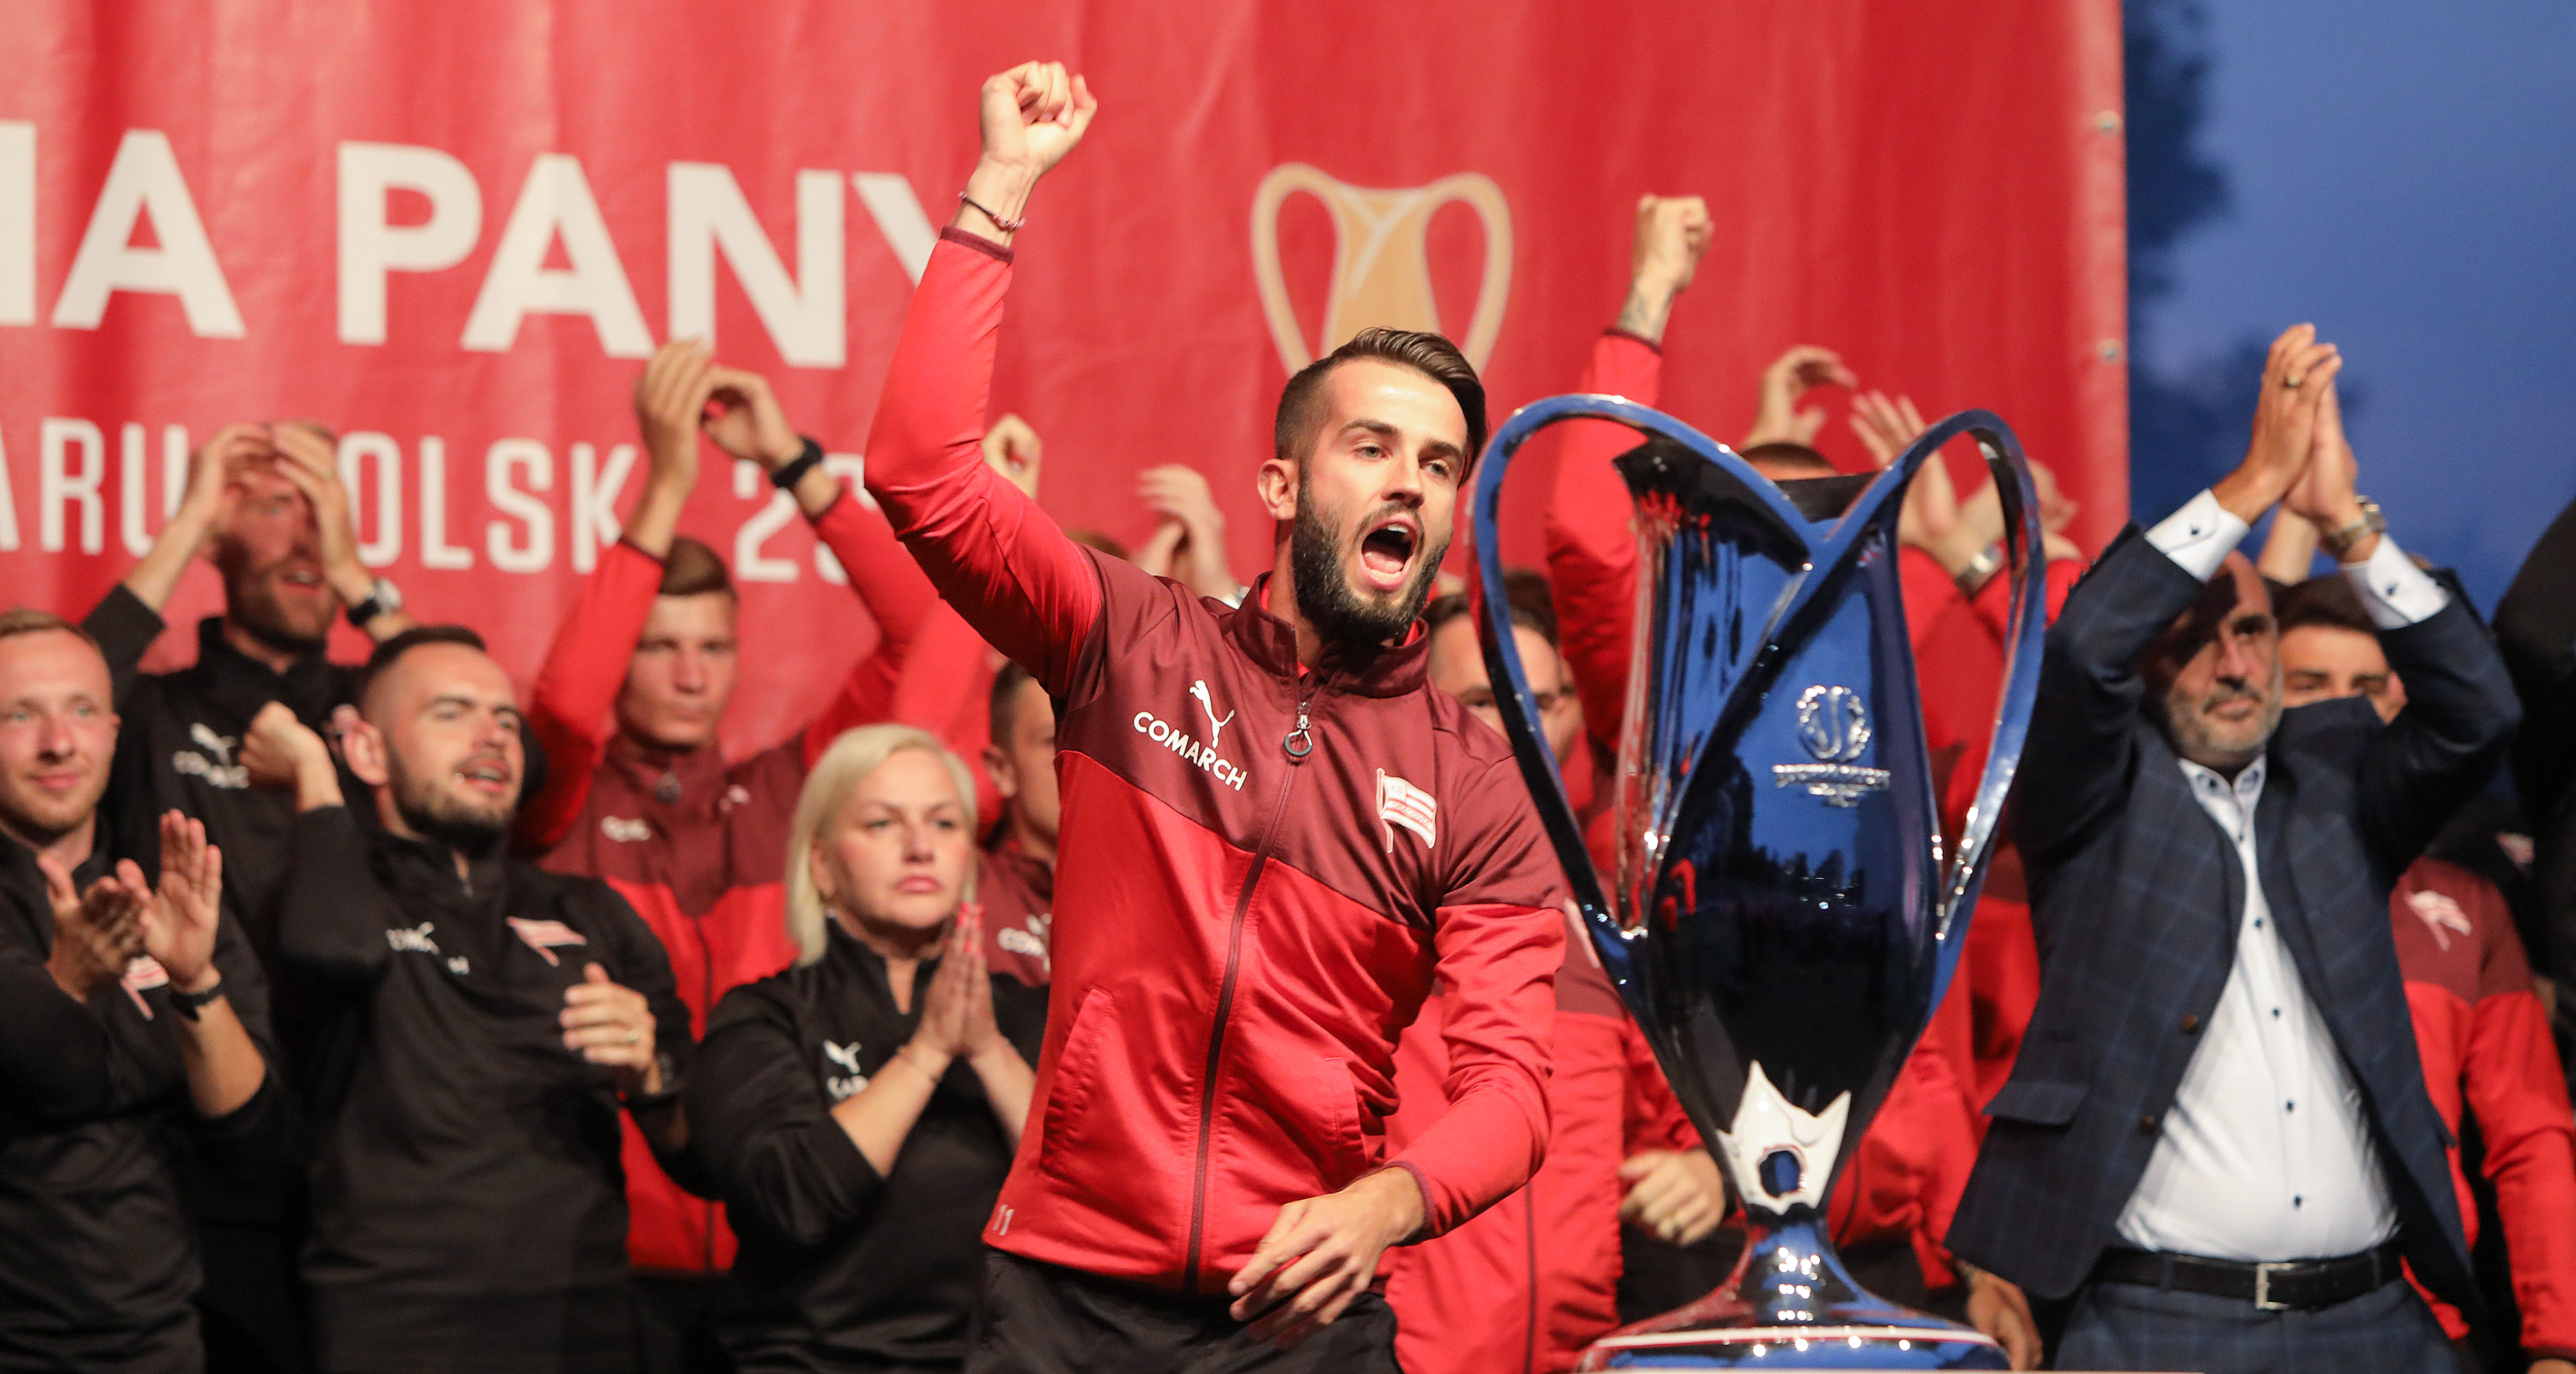 #ToSięNagrało: Kulisy oficjalnej celebracji zdobycia Pucharu Polski [VIDEO]